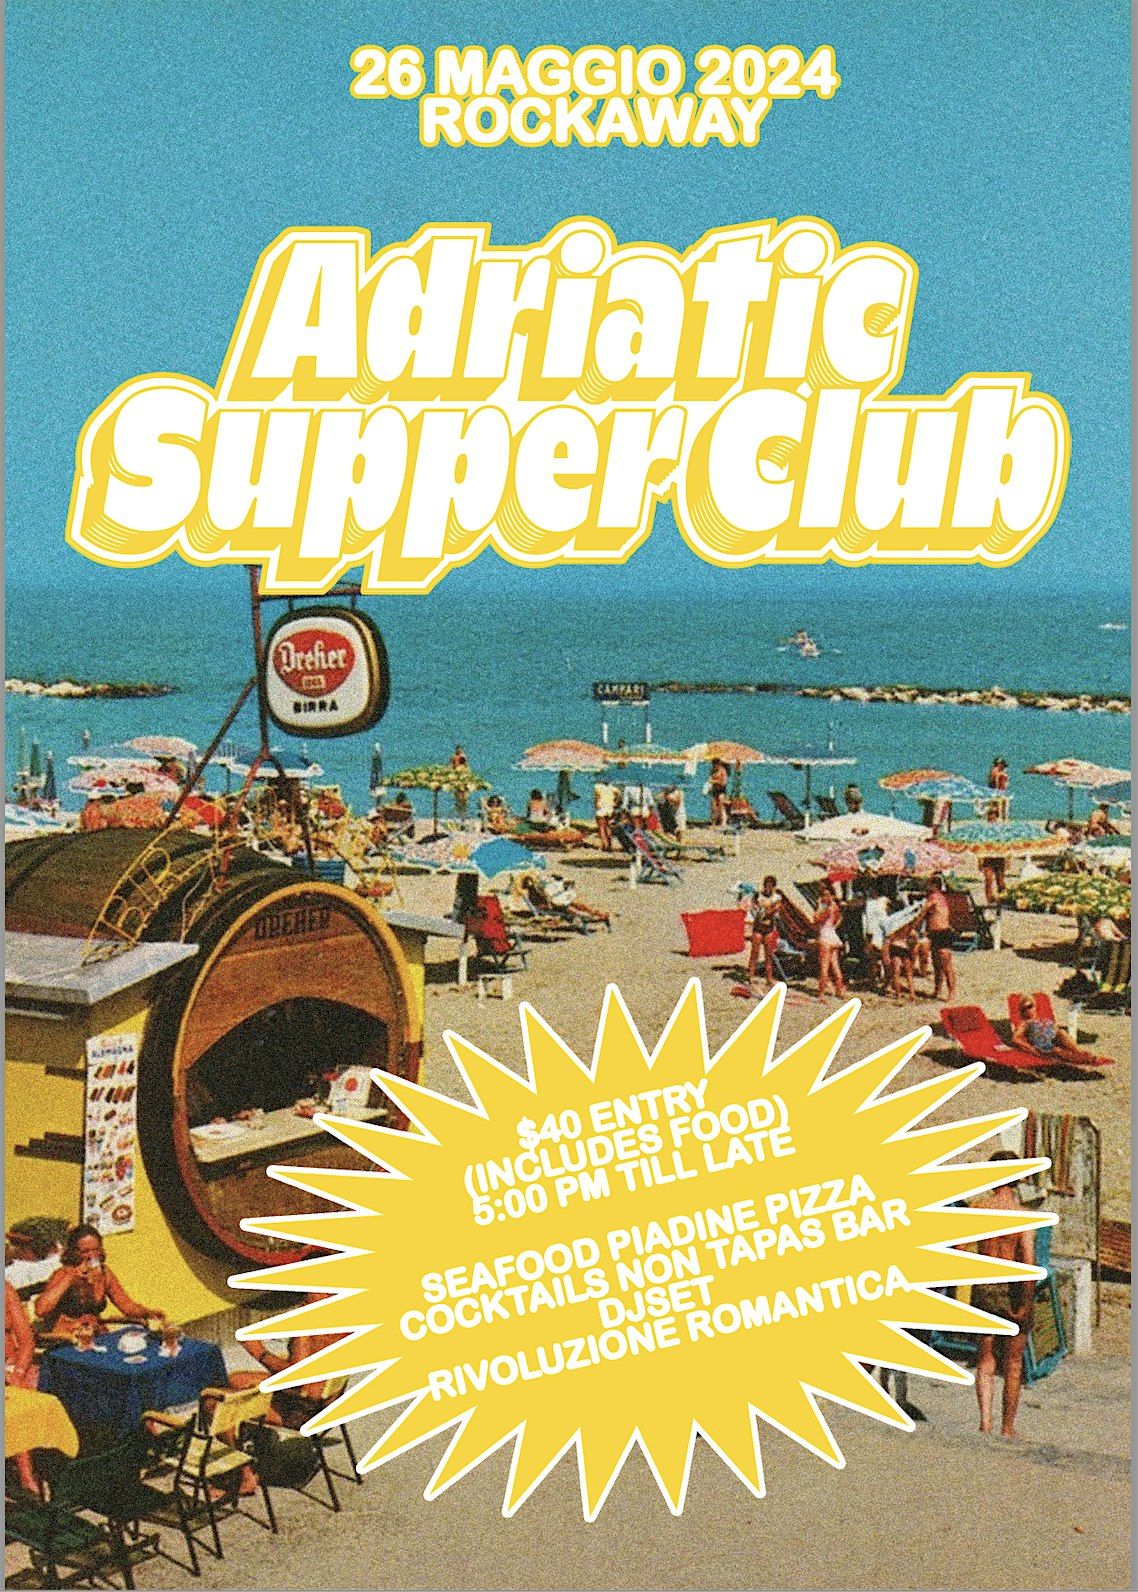 ADRIATIC SUPPER CLUB